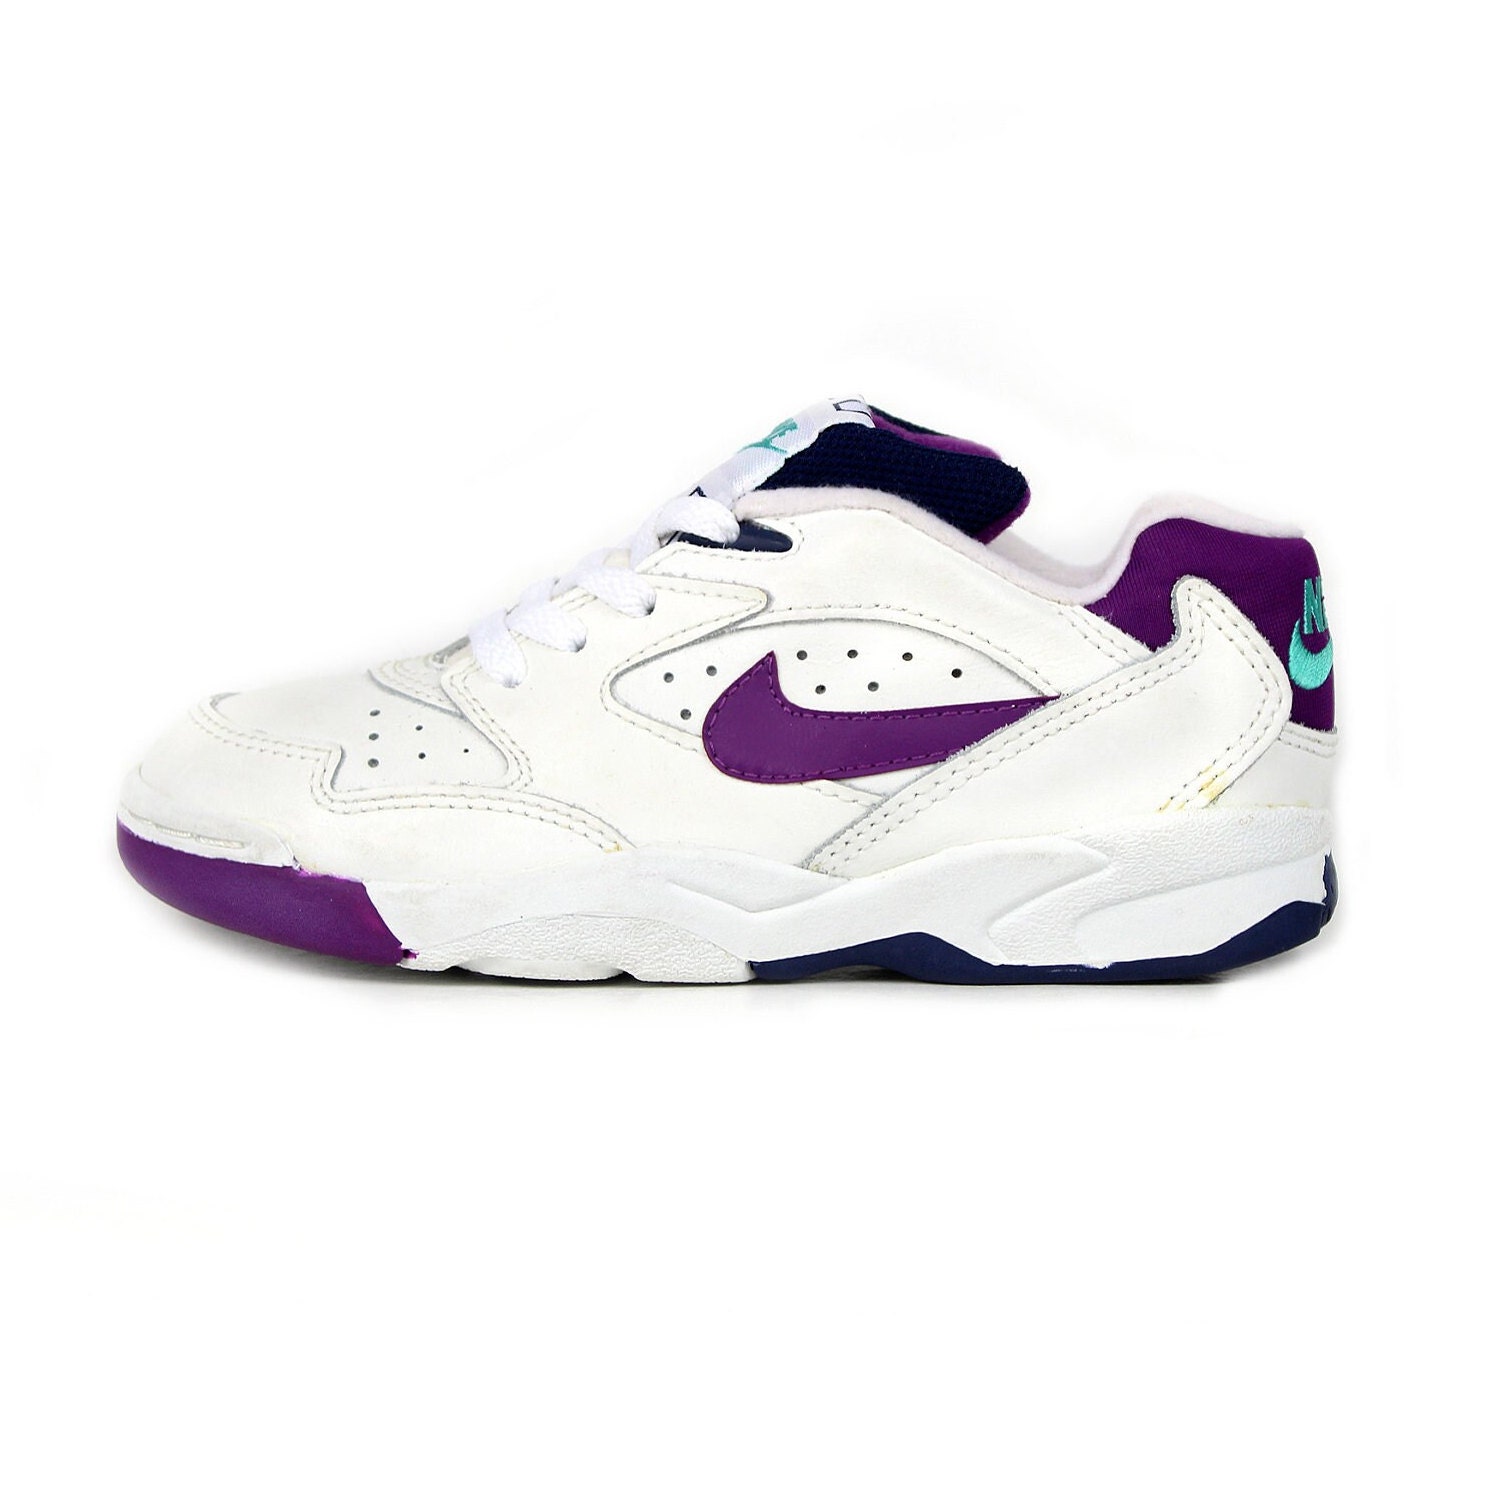 Handig kijk in Middel NOS 1993 90s Vintage Nike Ace Junior Sneakers Kicks Shoes Kids - Etsy